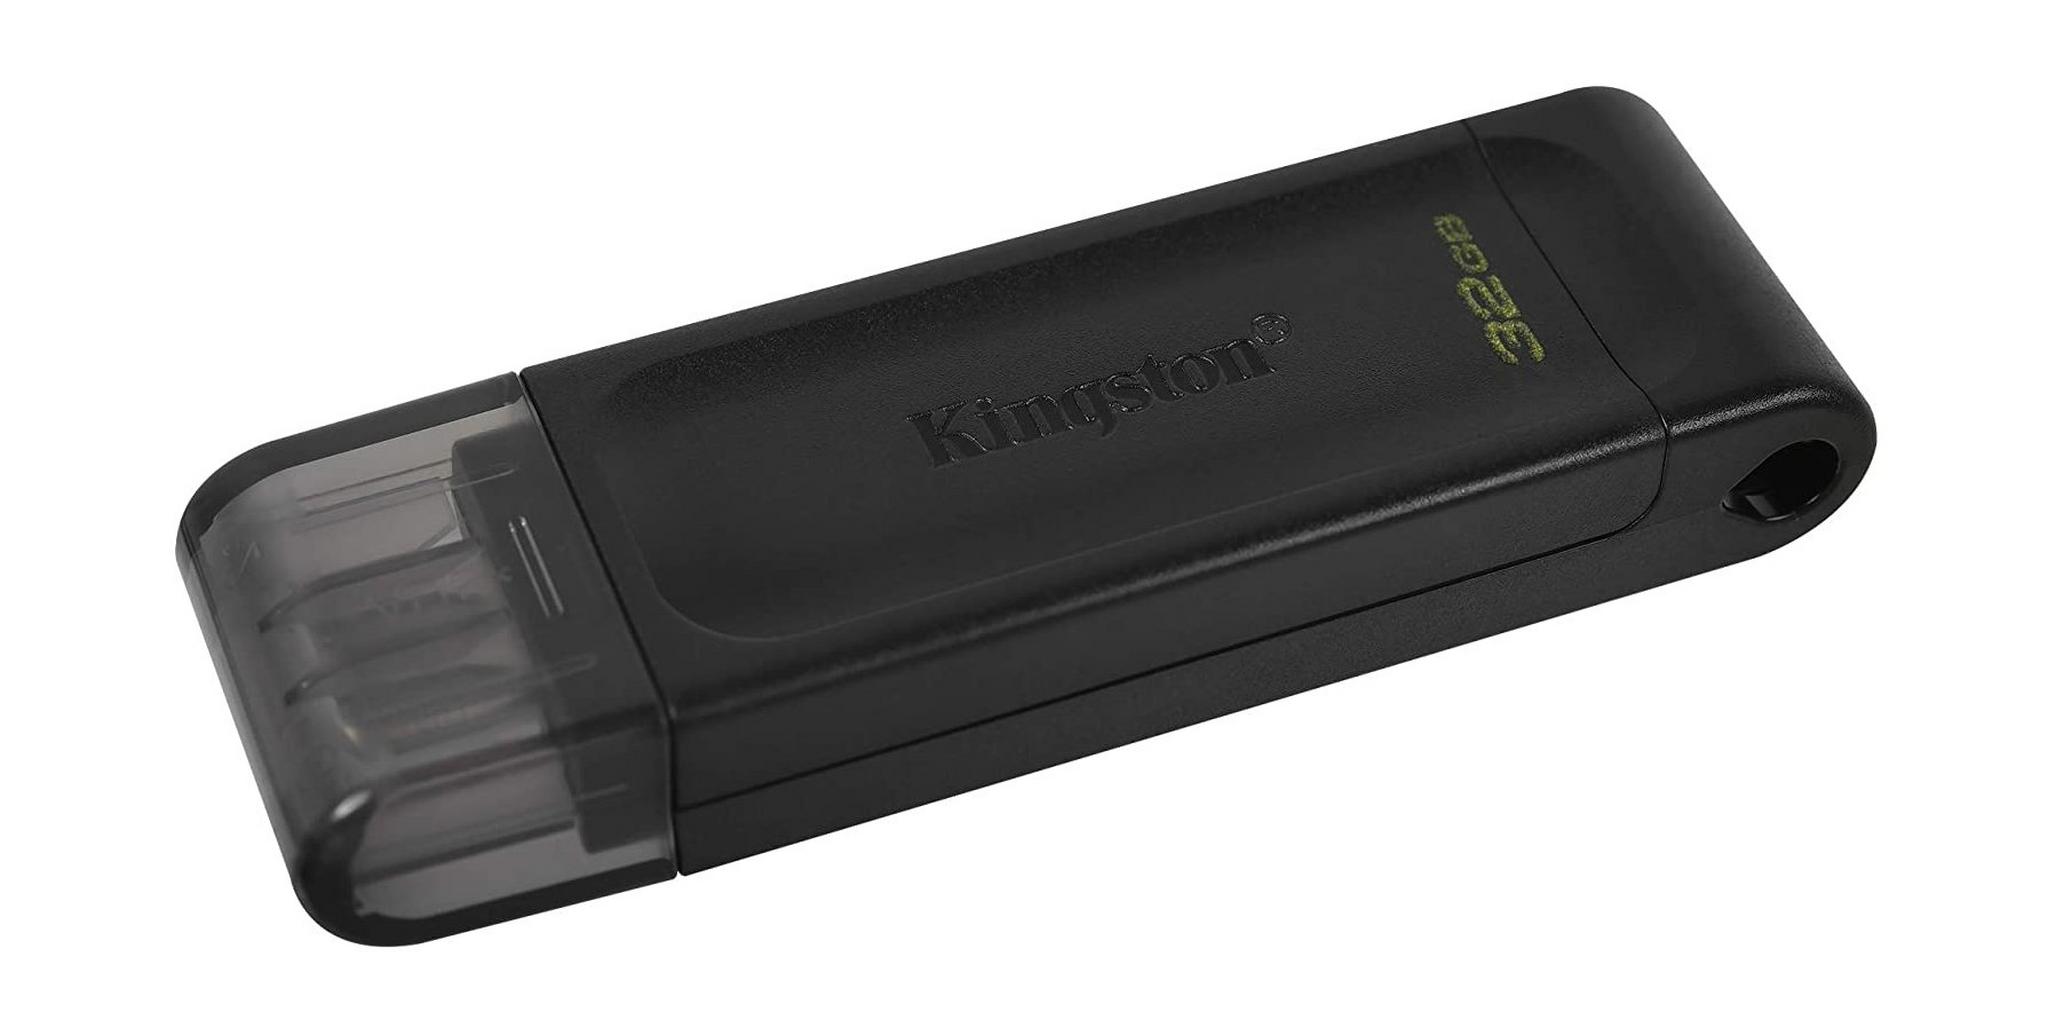 Kingston DataTraveler 70 USB 3.2 Gen 1 32GB USB-C Flash Drive